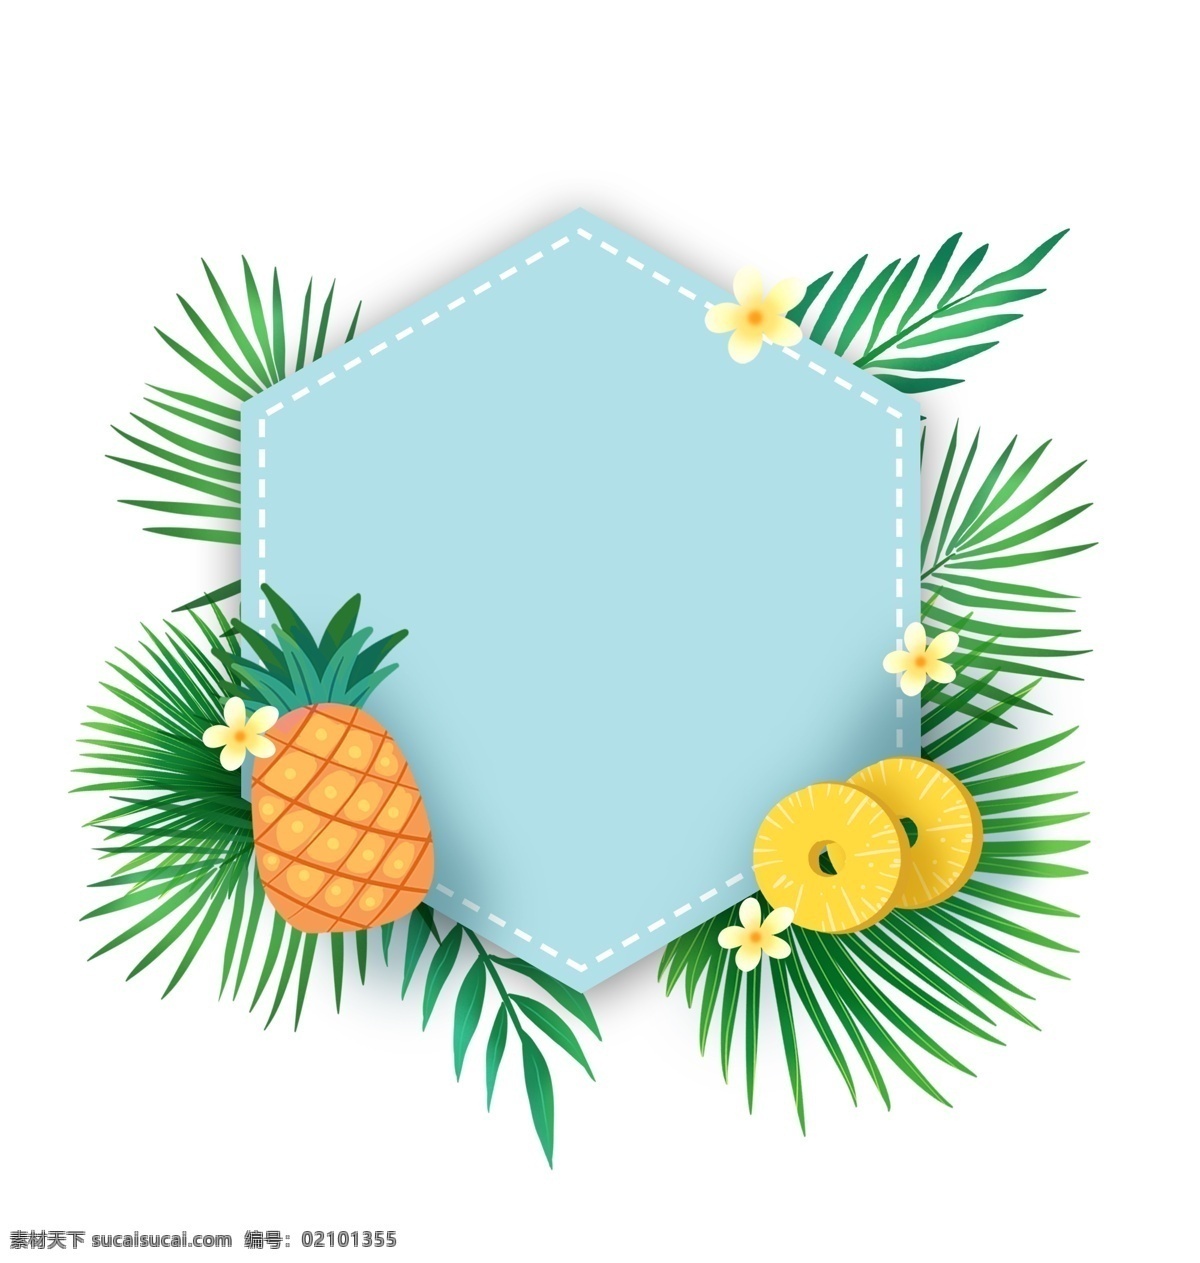 夏季 水果 菠萝 文本 框 免 抠 夏天 凤梨 小清新 蓝色 植物 叶子 绿叶 水果边框 菠萝边框 黄色 热带水果 文本框